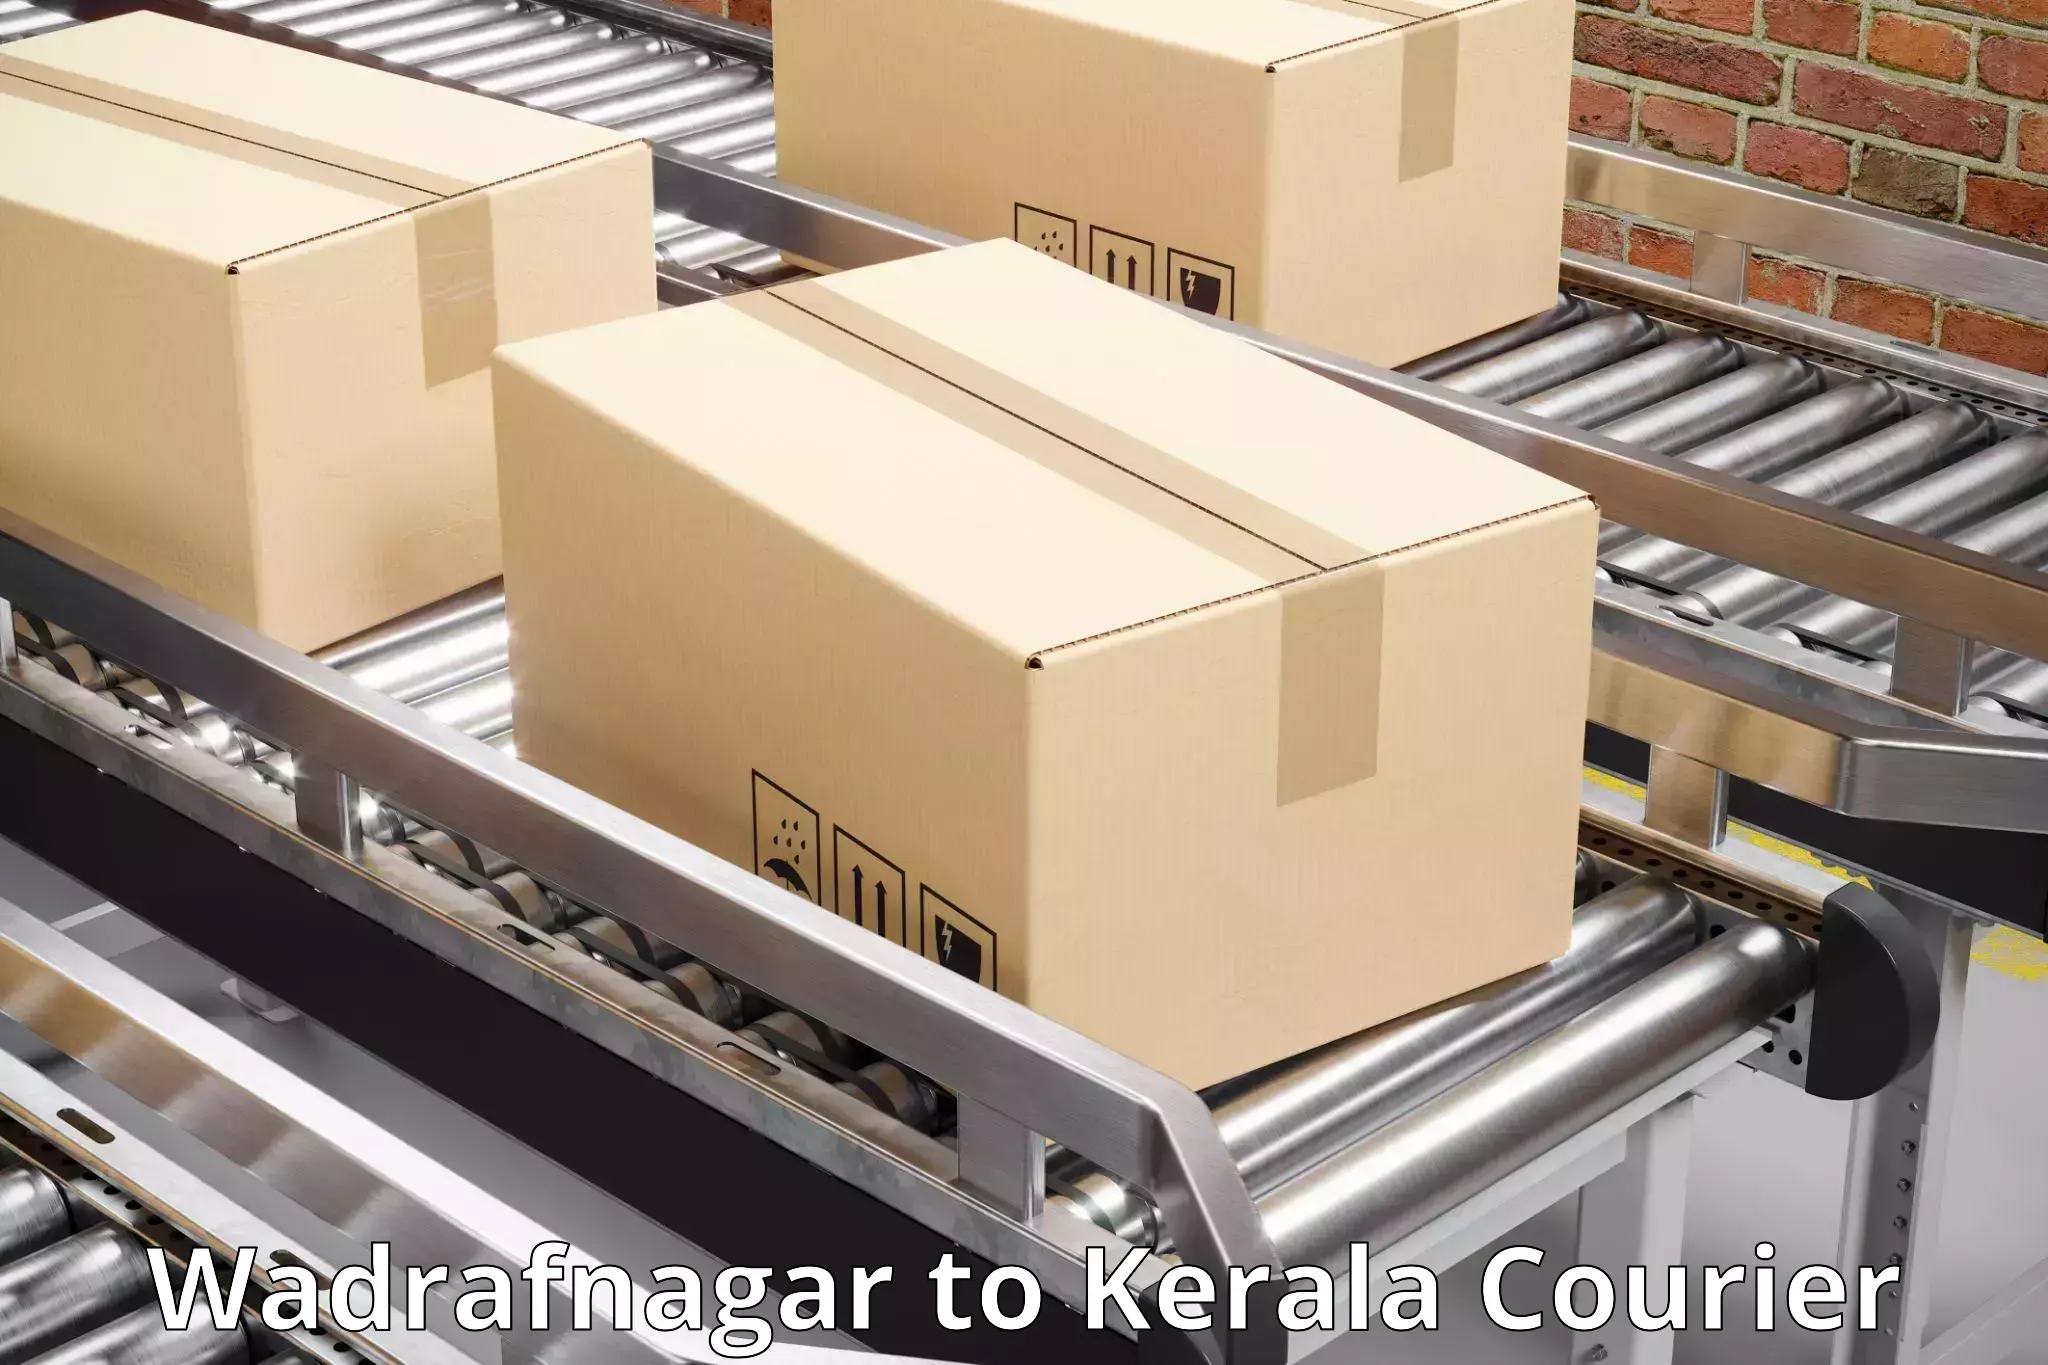 Innovative shipping solutions Wadrafnagar to Cochin Port Kochi